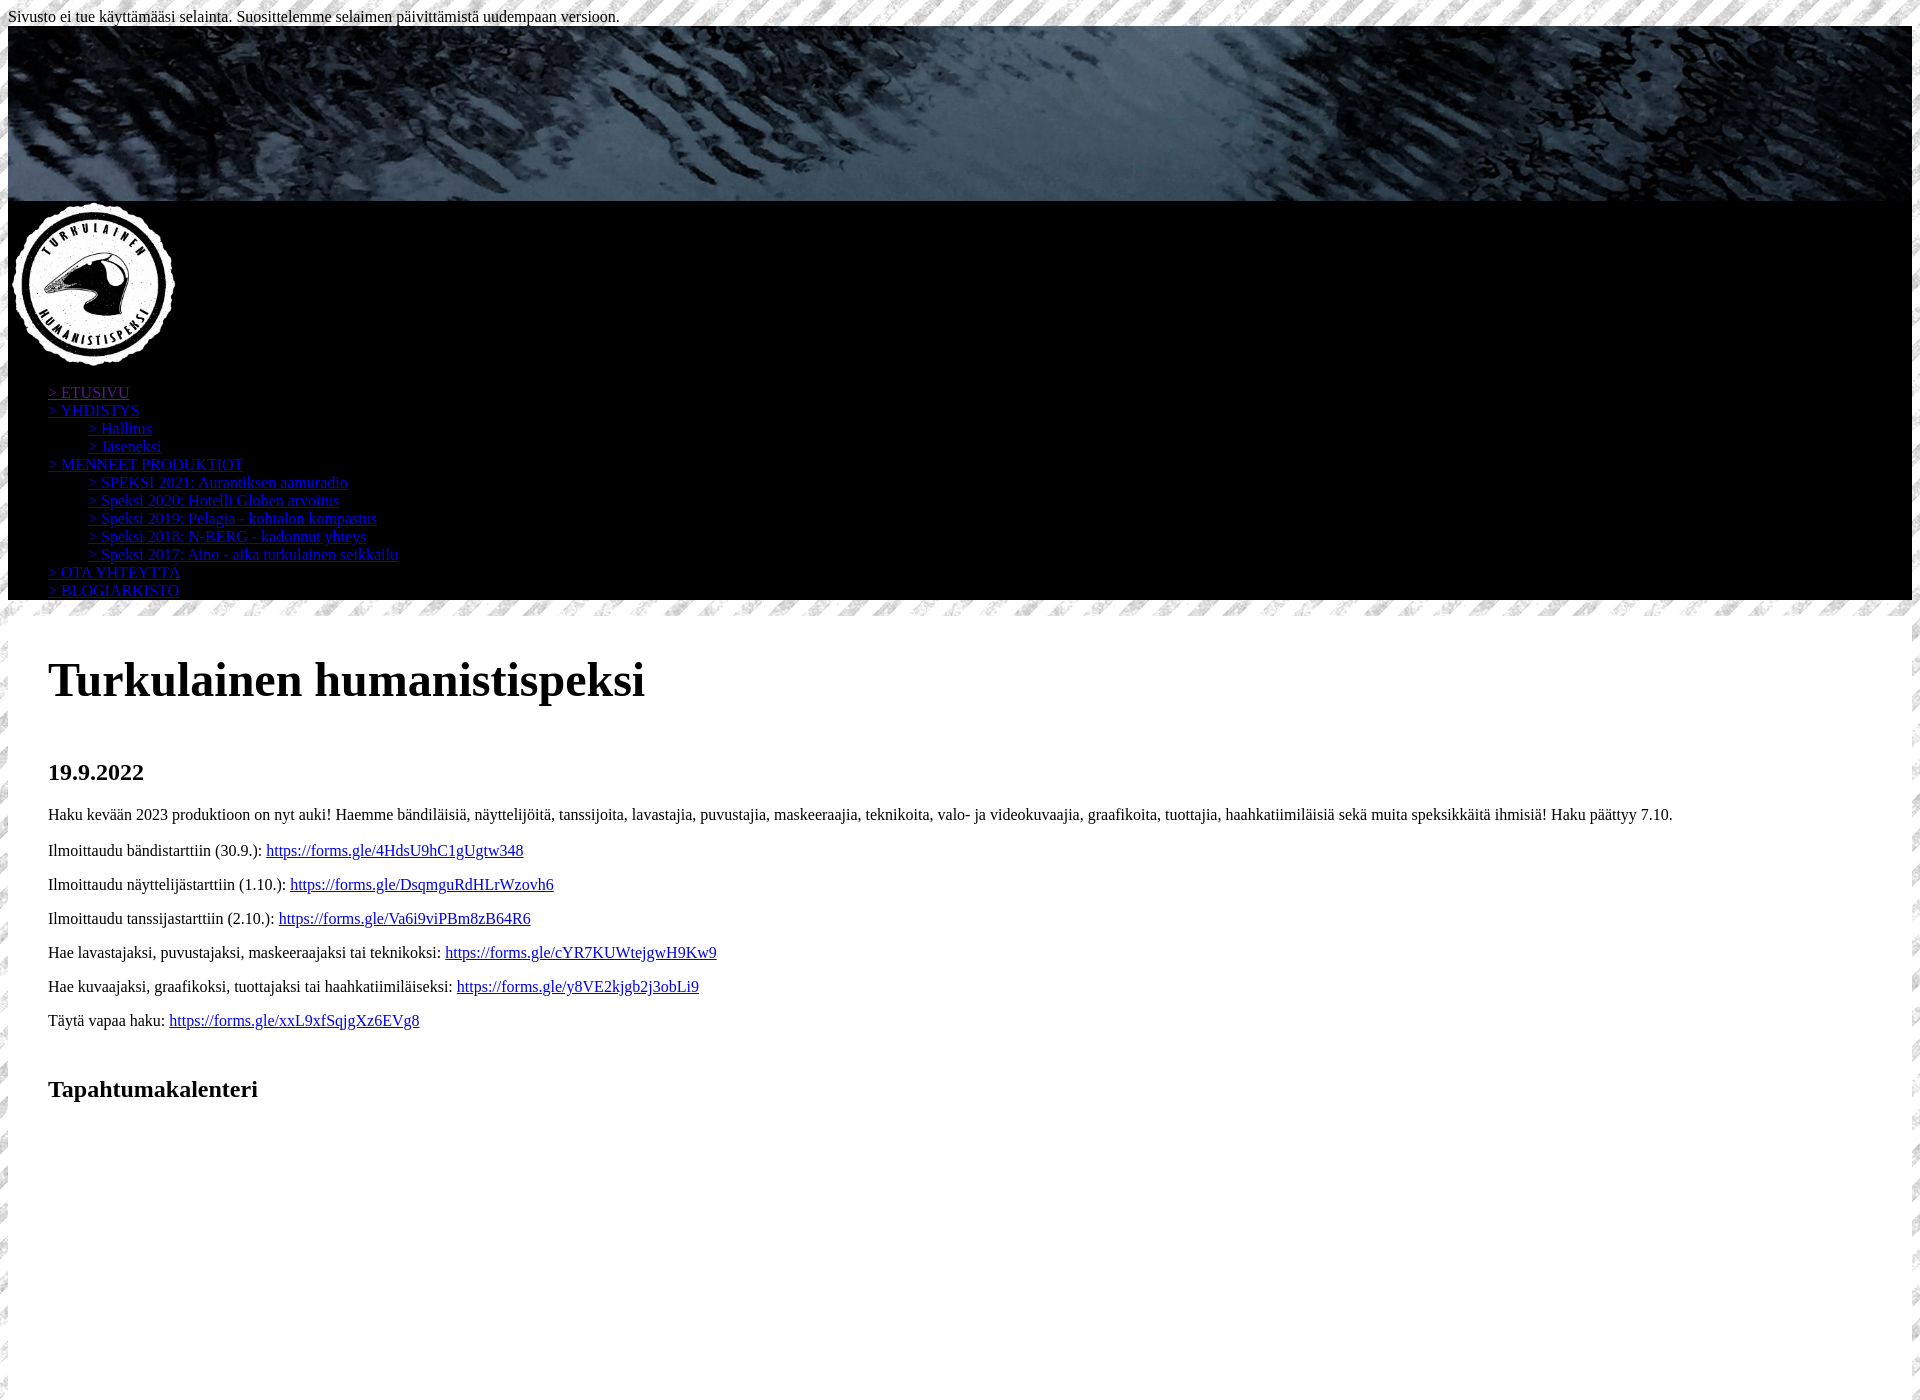 Screenshot for turkulainenhumanistispeksi.fi